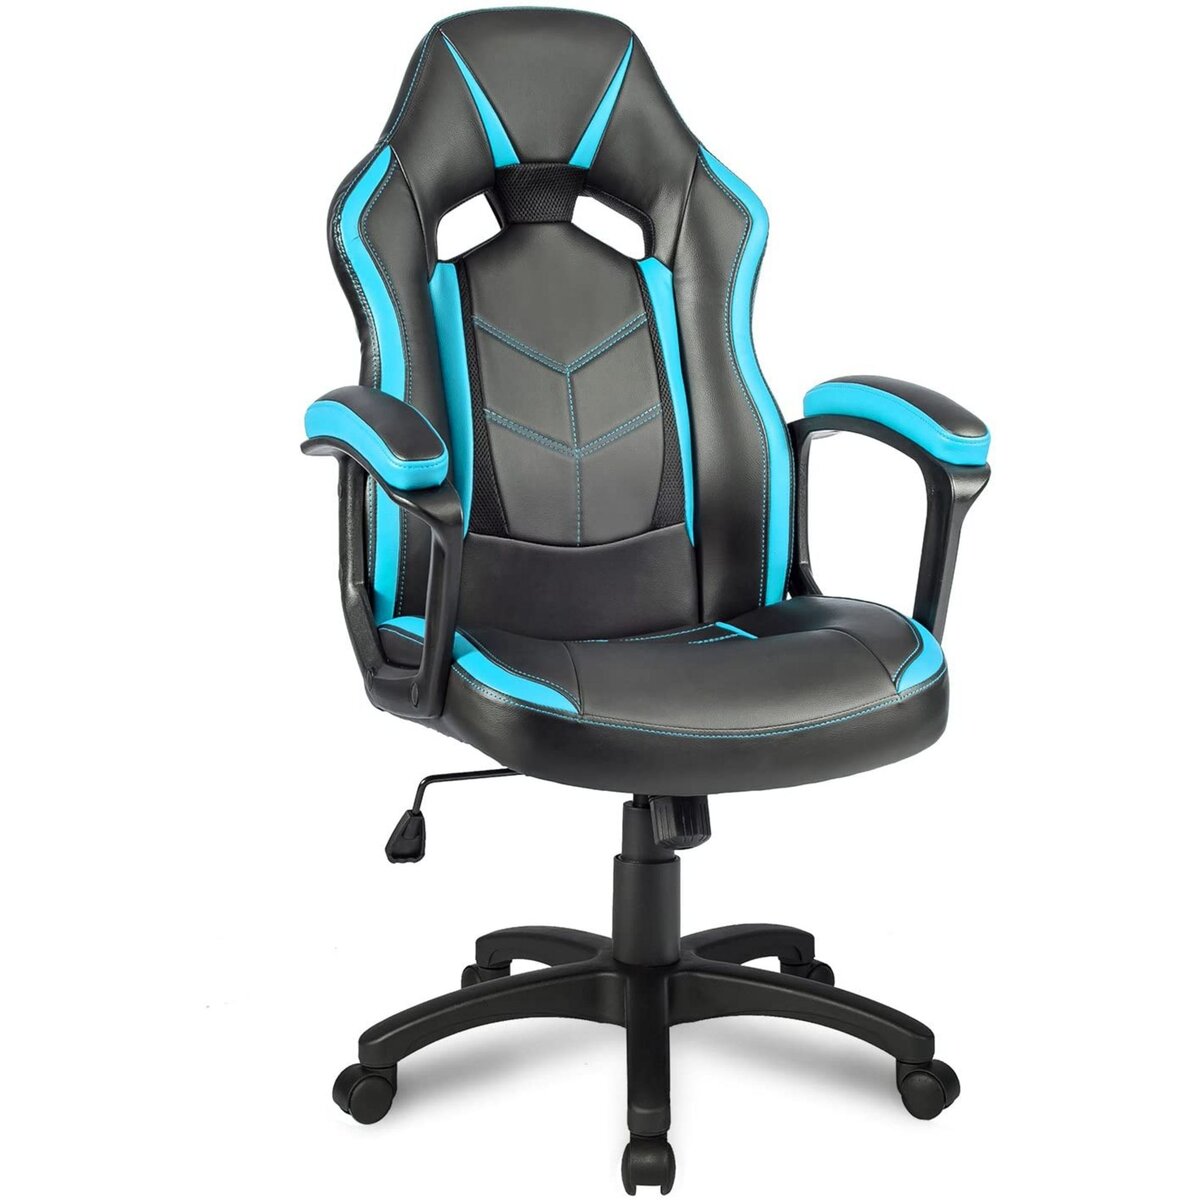 Chaise Gamer ergonomique-chaise de bureau, chaise de course